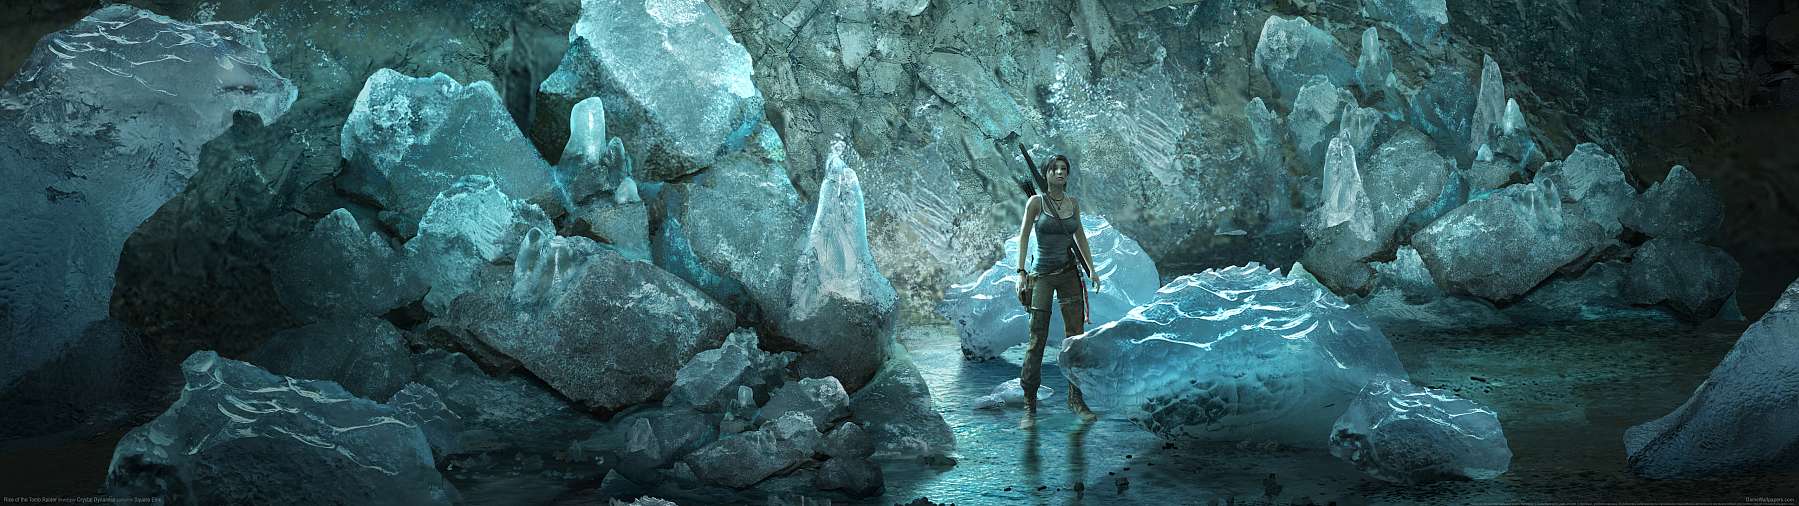 Rise of the Tomb Raider superwide fondo de escritorio 26